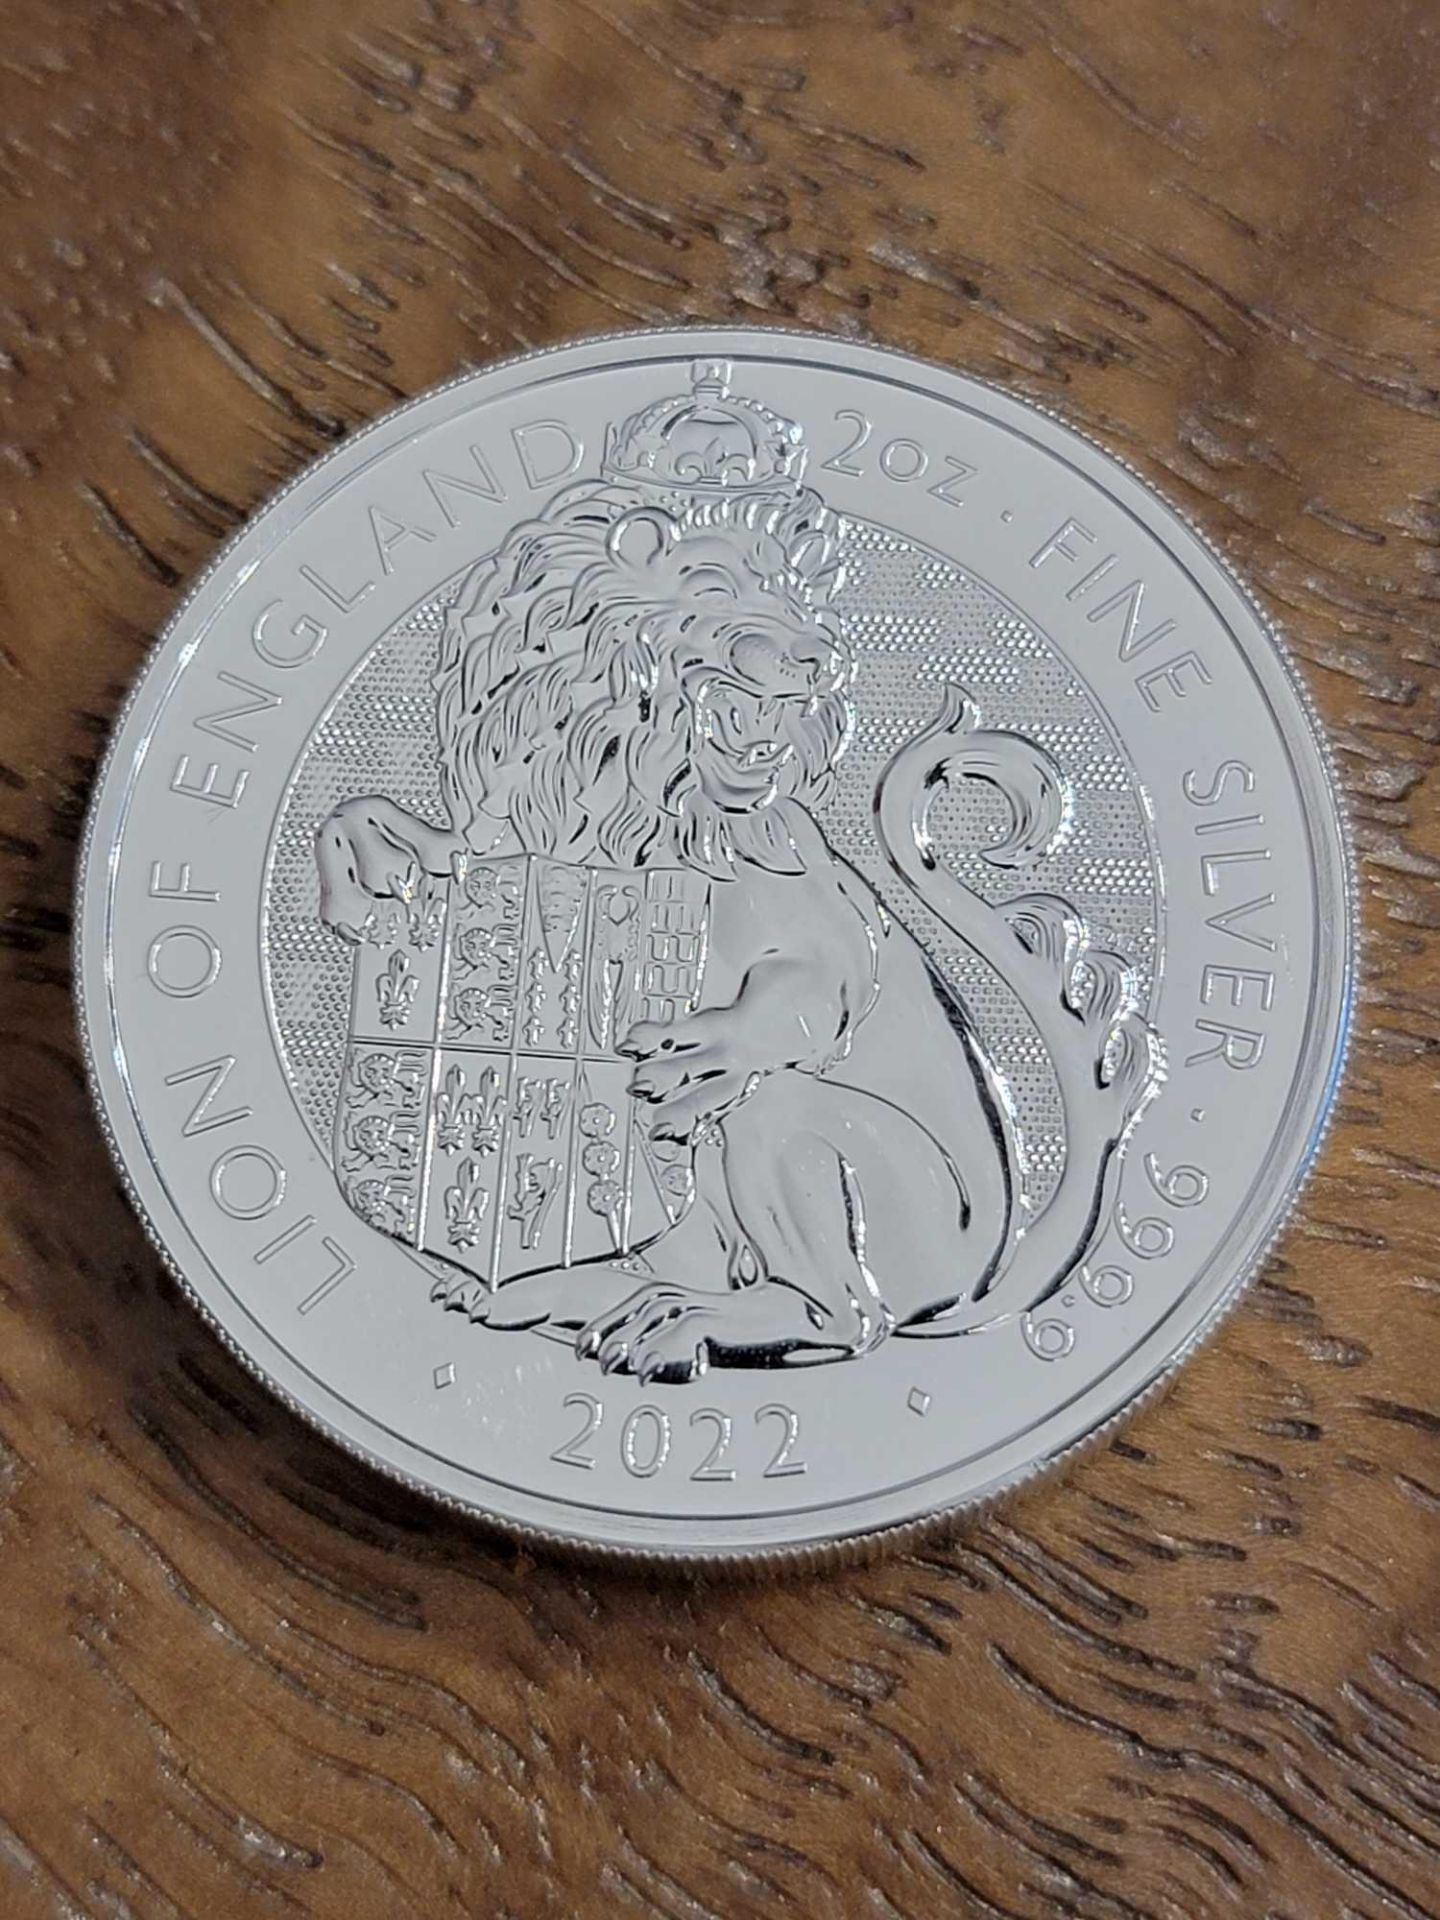 2 oz Lion of England Coin